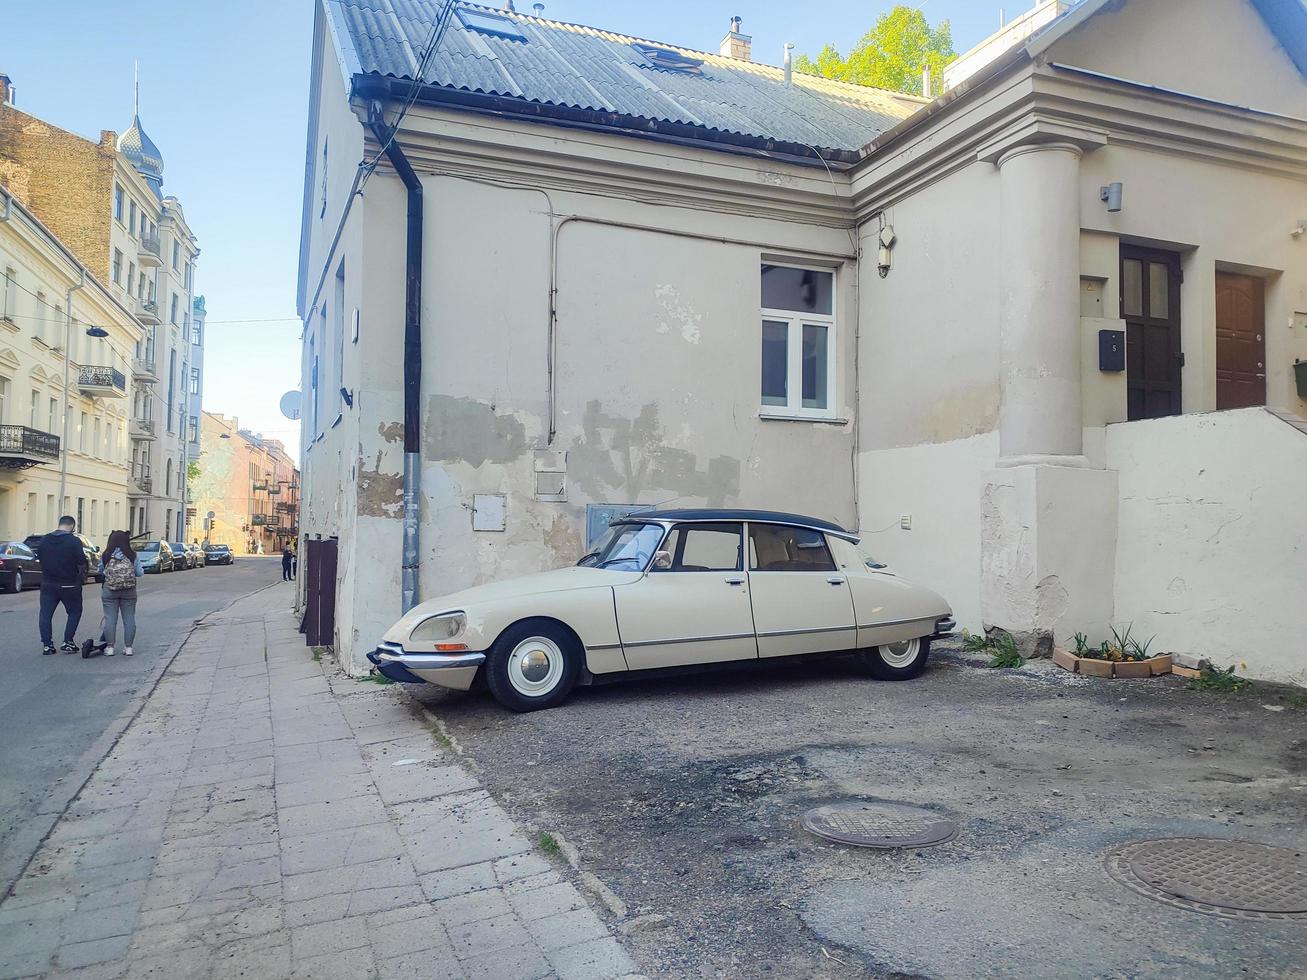 vilnius, Litouwen, 2022 - gebouw hoek tentoonstelling van oud beige citroen auto niet verwacht vinden in Vilnius oud stad- foto